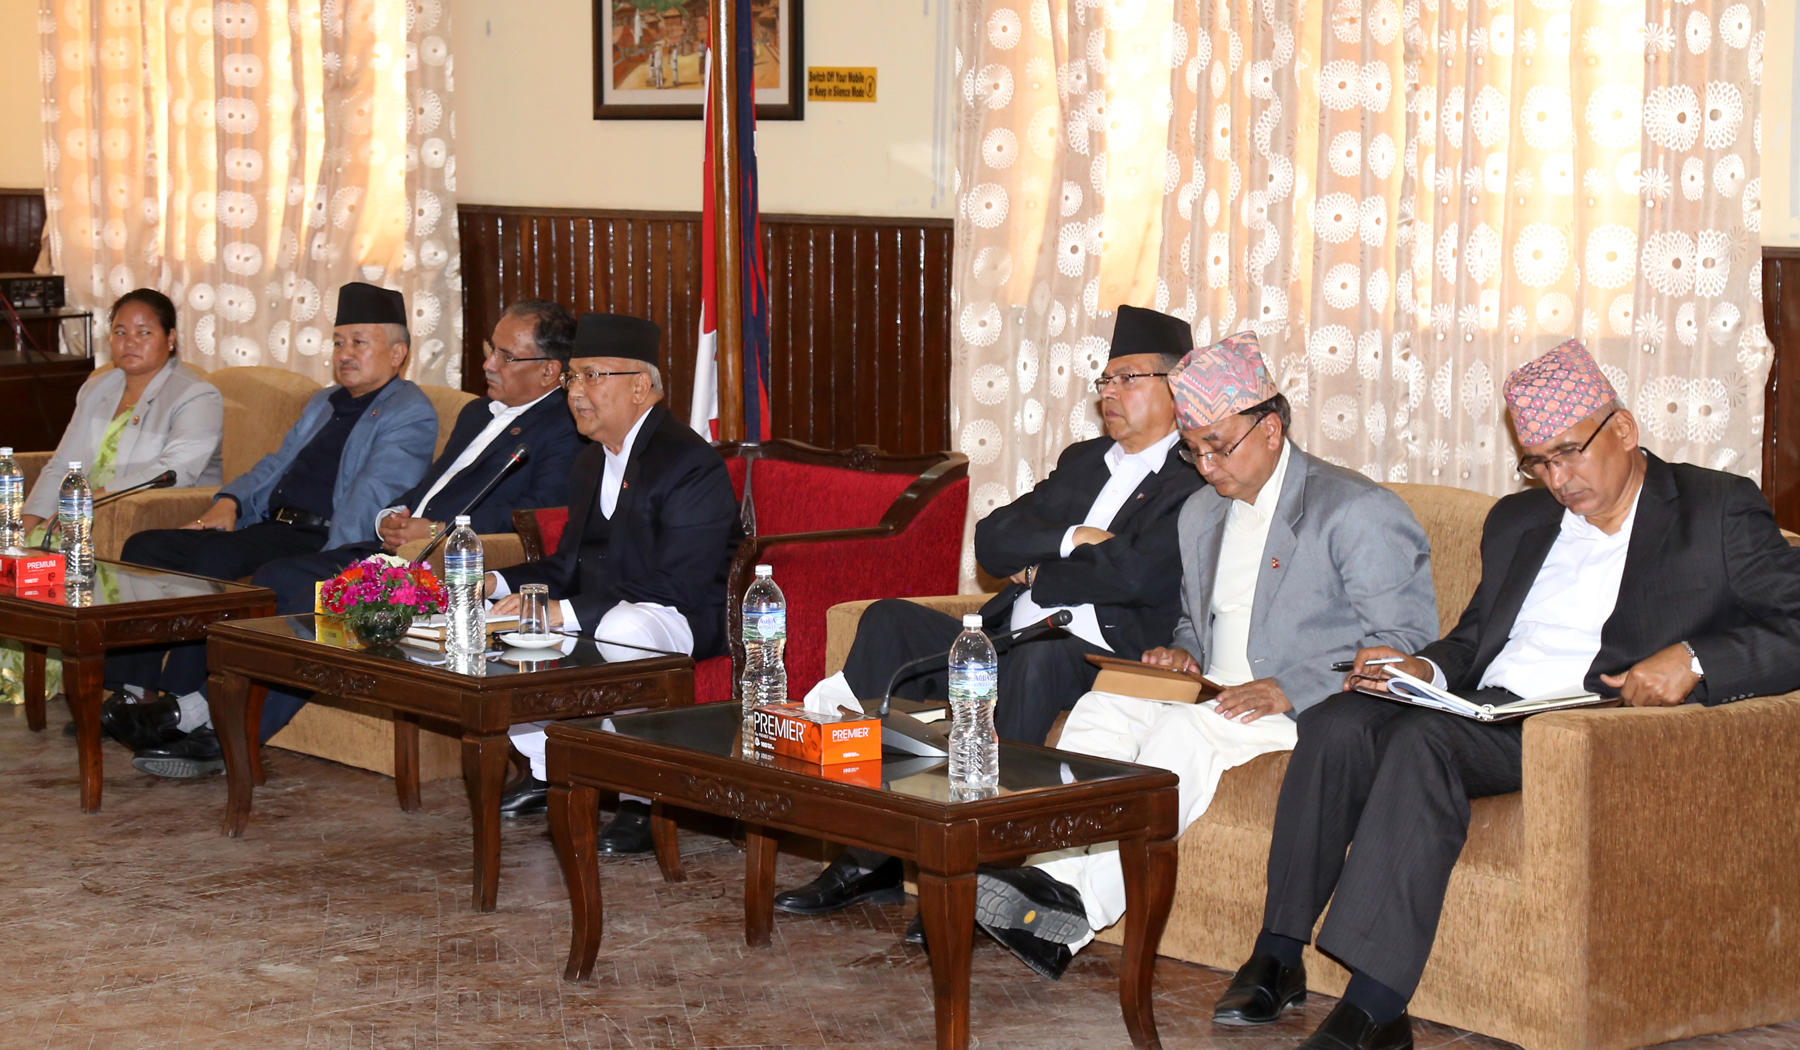 नेपाल कम्यूनिष्ट पार्टीकोे वालुवाटारमा बसेको दोस्रो केन्द्रीय वैठकलाई सम्बोधन गर्दै प्रधानमन्त्री तथा पार्टी अध्यक्ष केपी शर्मा ओली । तस्बिर : प्रदीपराज वन्त,रासस